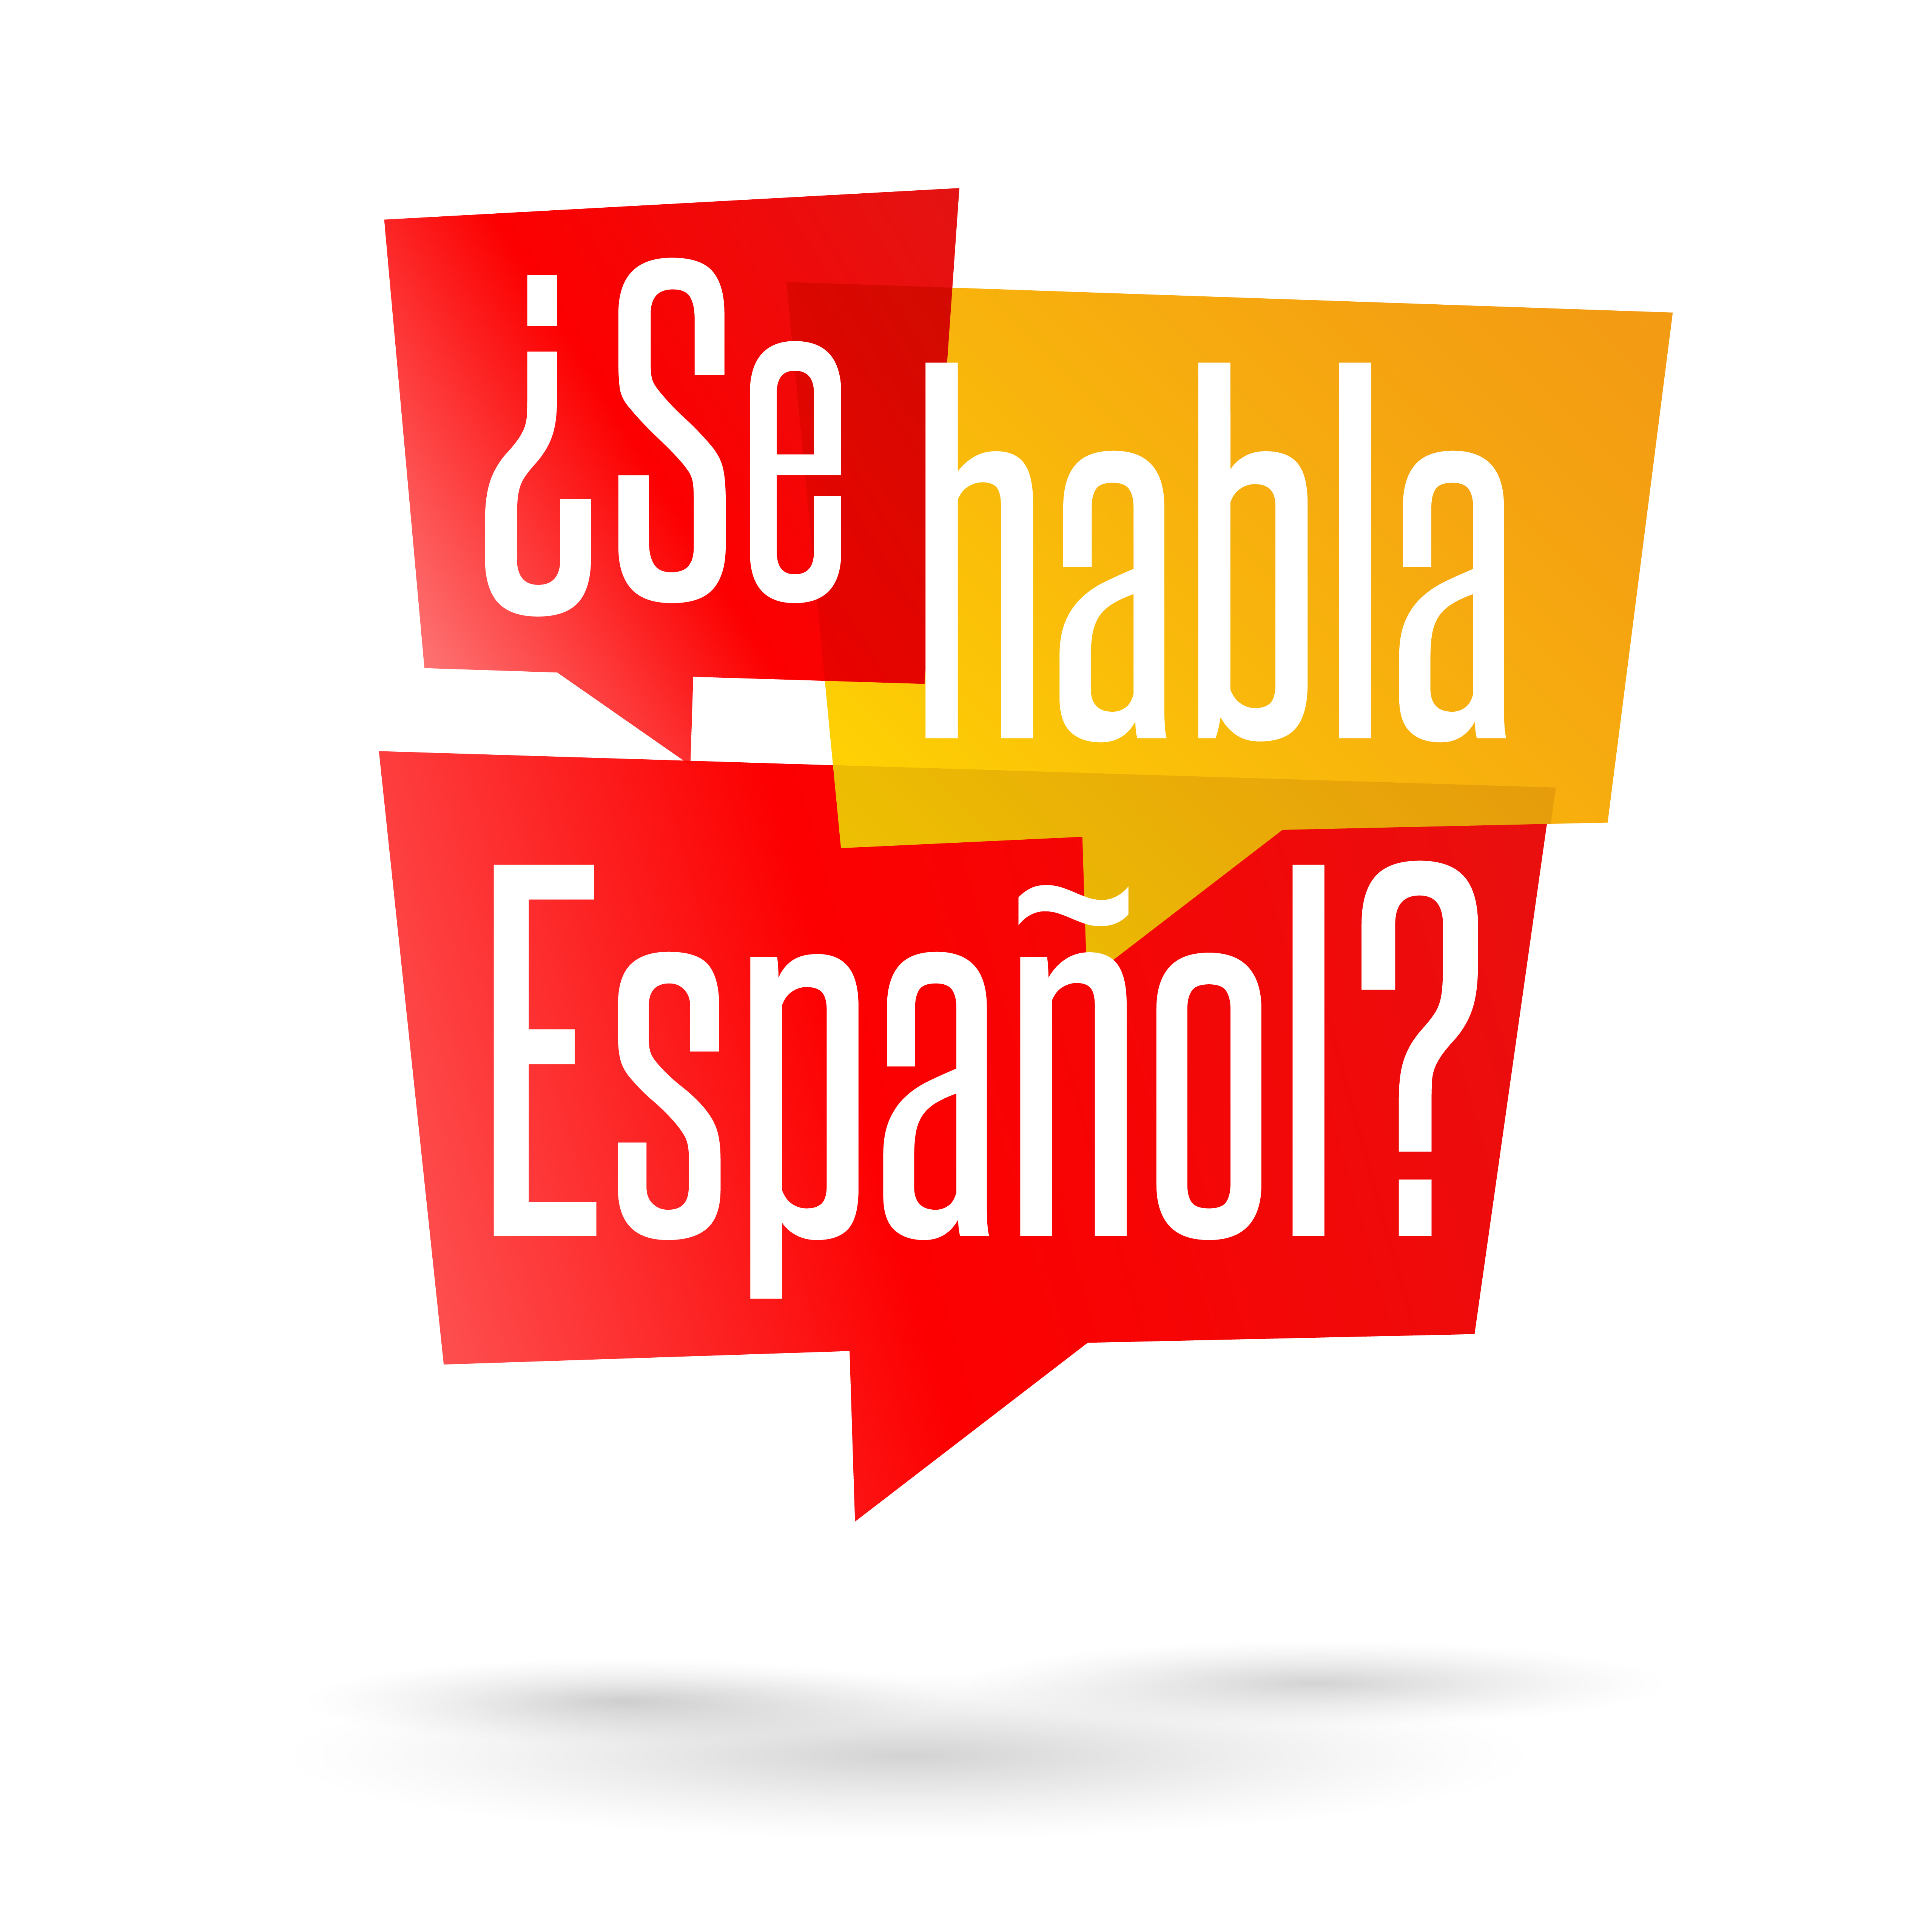 Viva el Espanol Viva el Espan